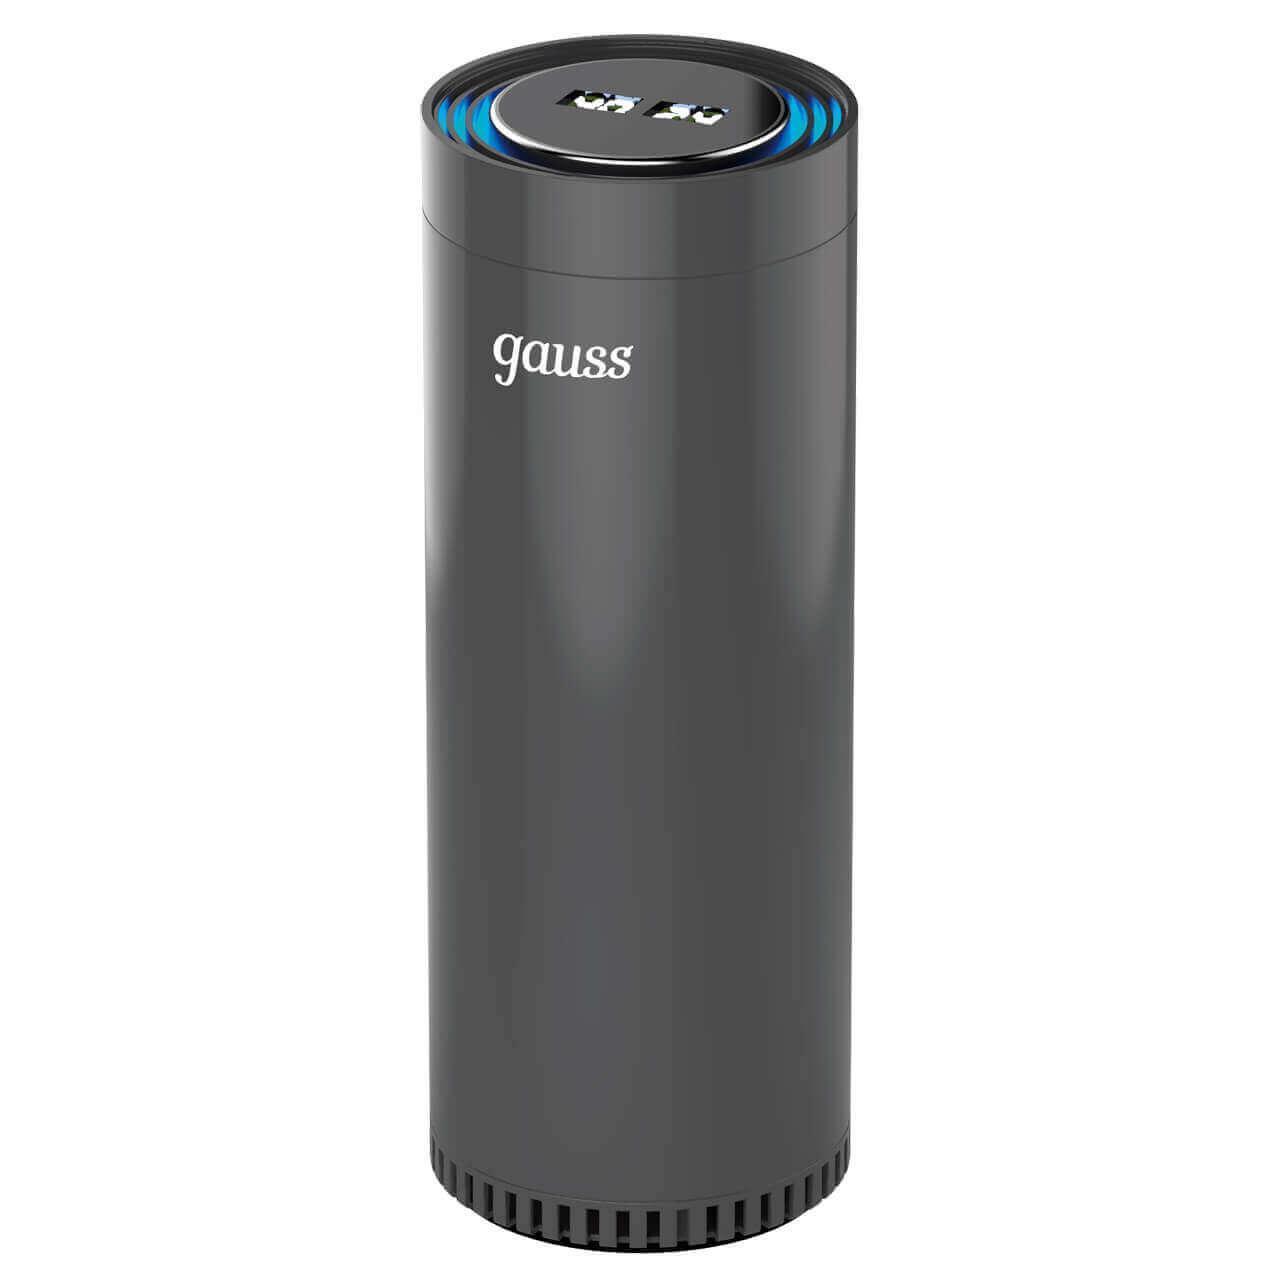 Где купить Очиститель воздуха Gauss guard чёрный с ионизатором GR020 Gauss 